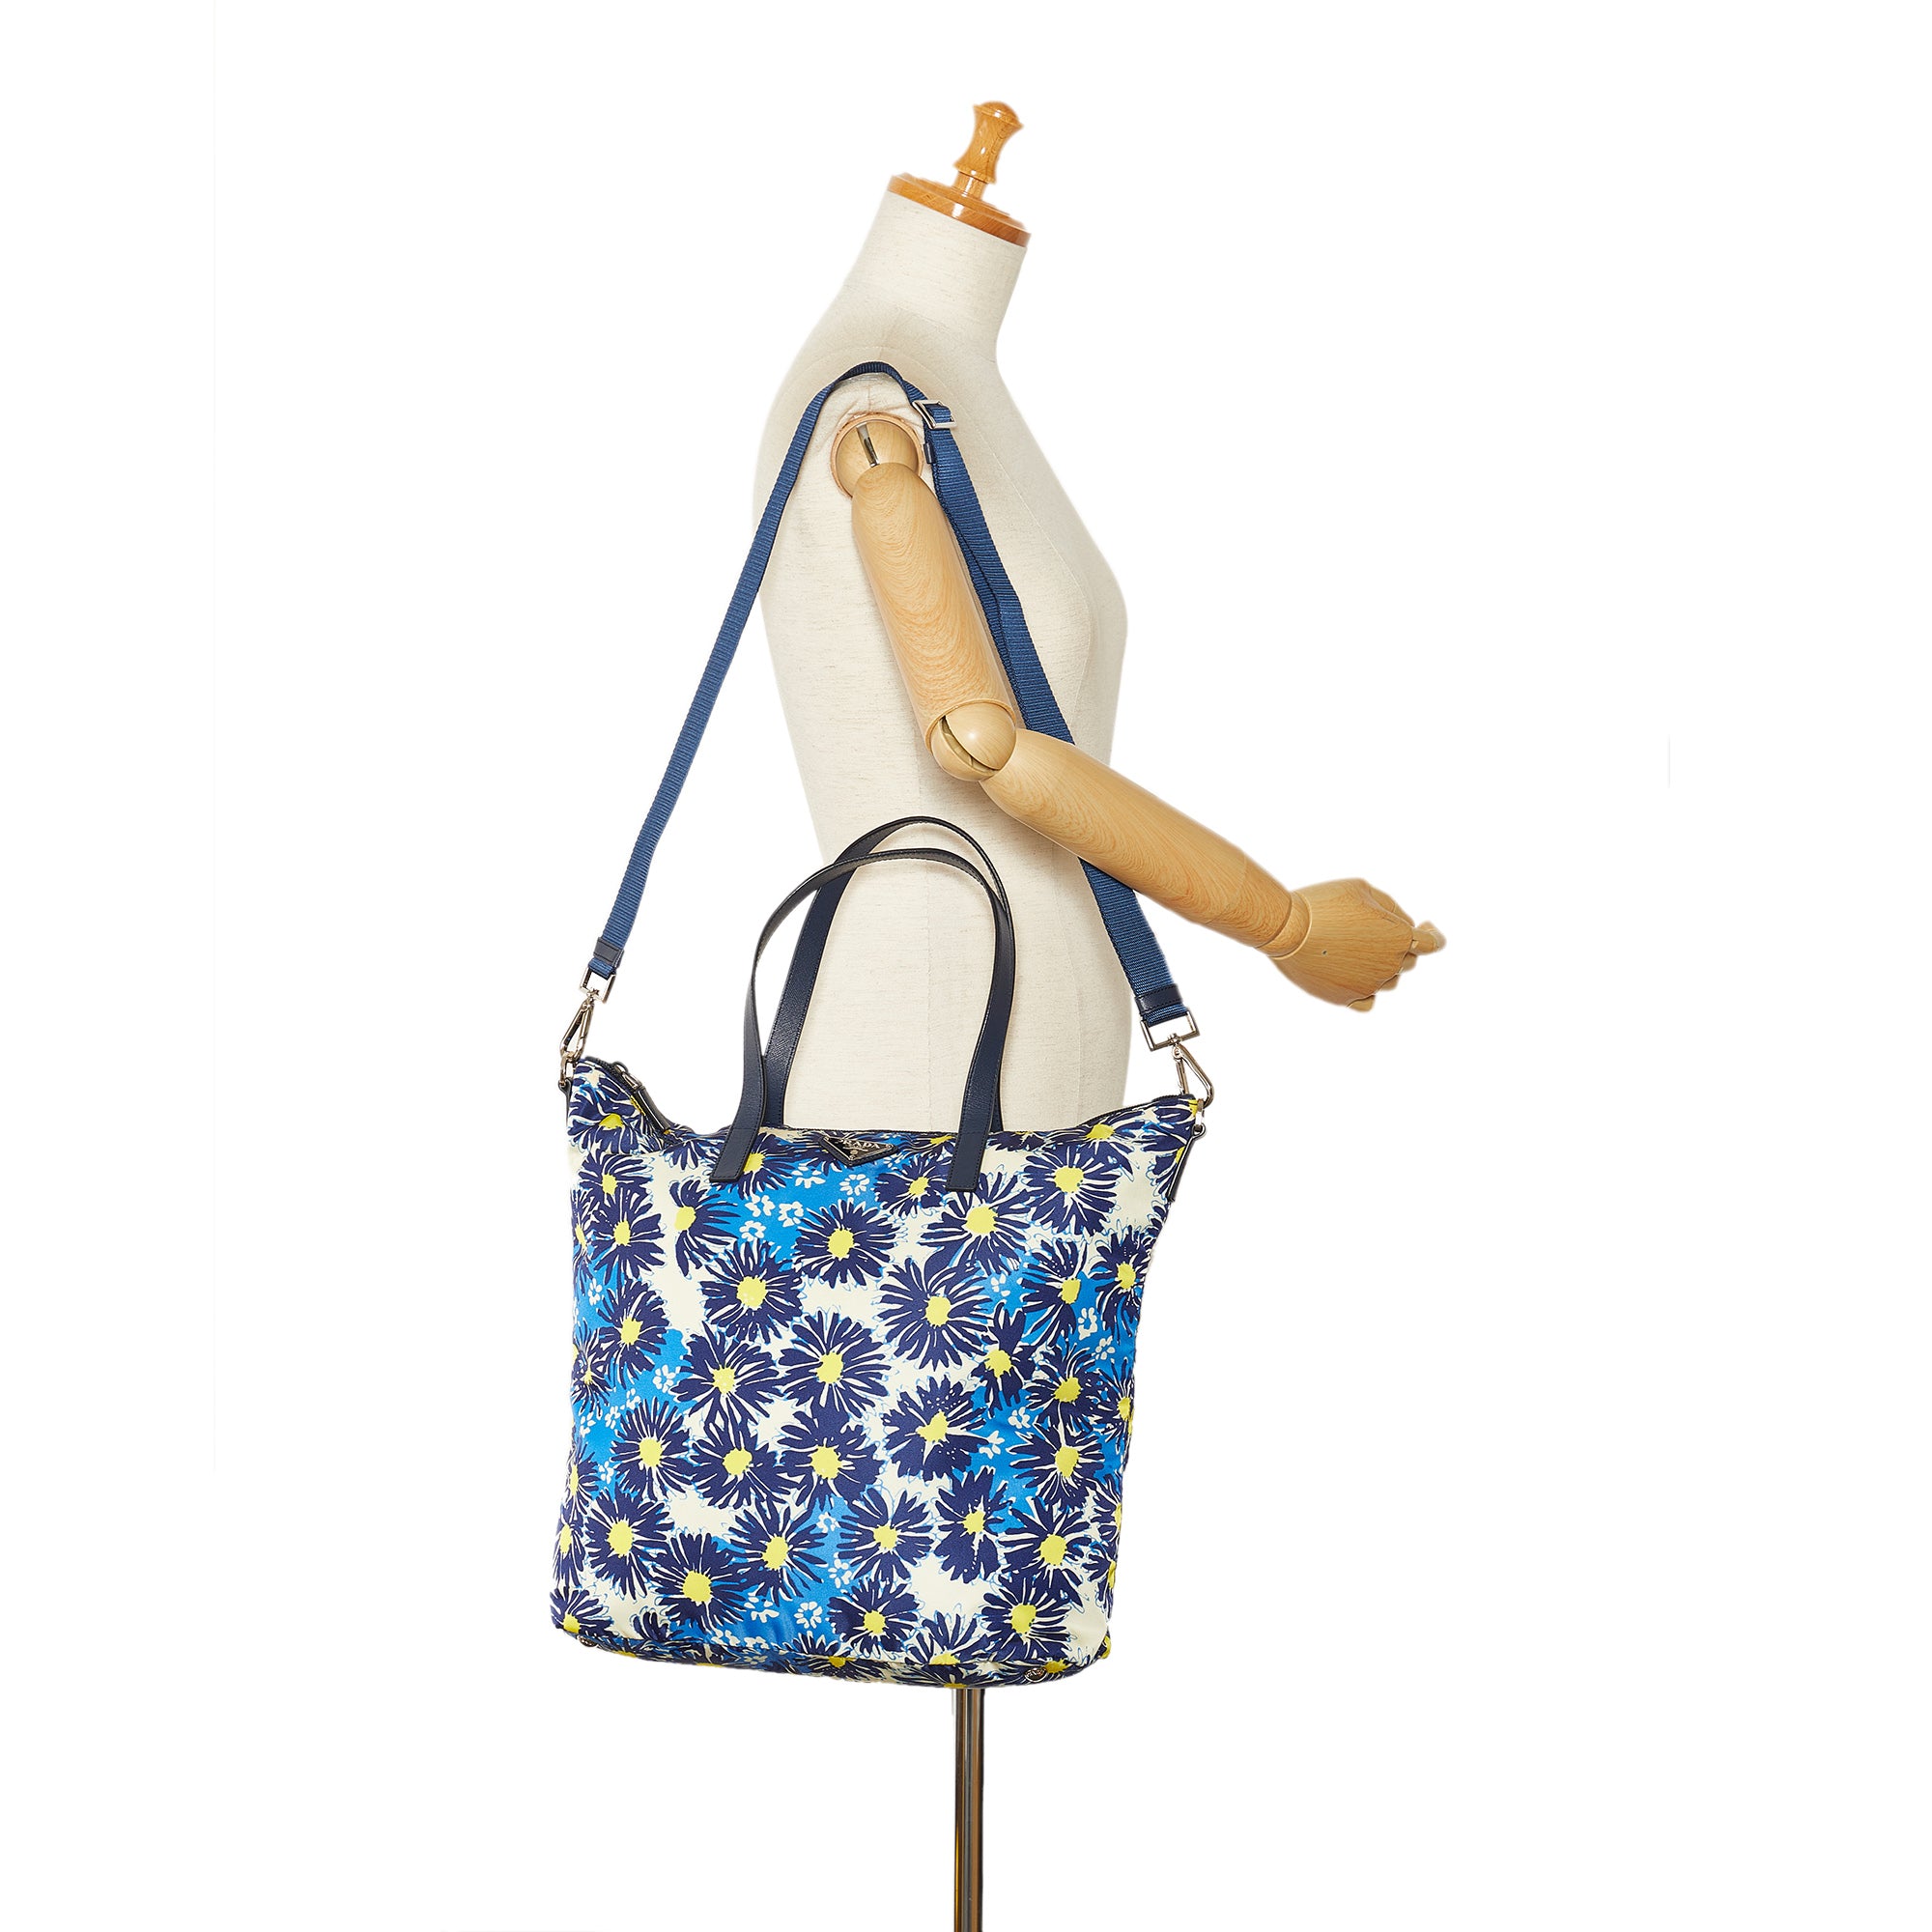 Blue Prada Tessuto Stampato Tote Bag – Designer Revival